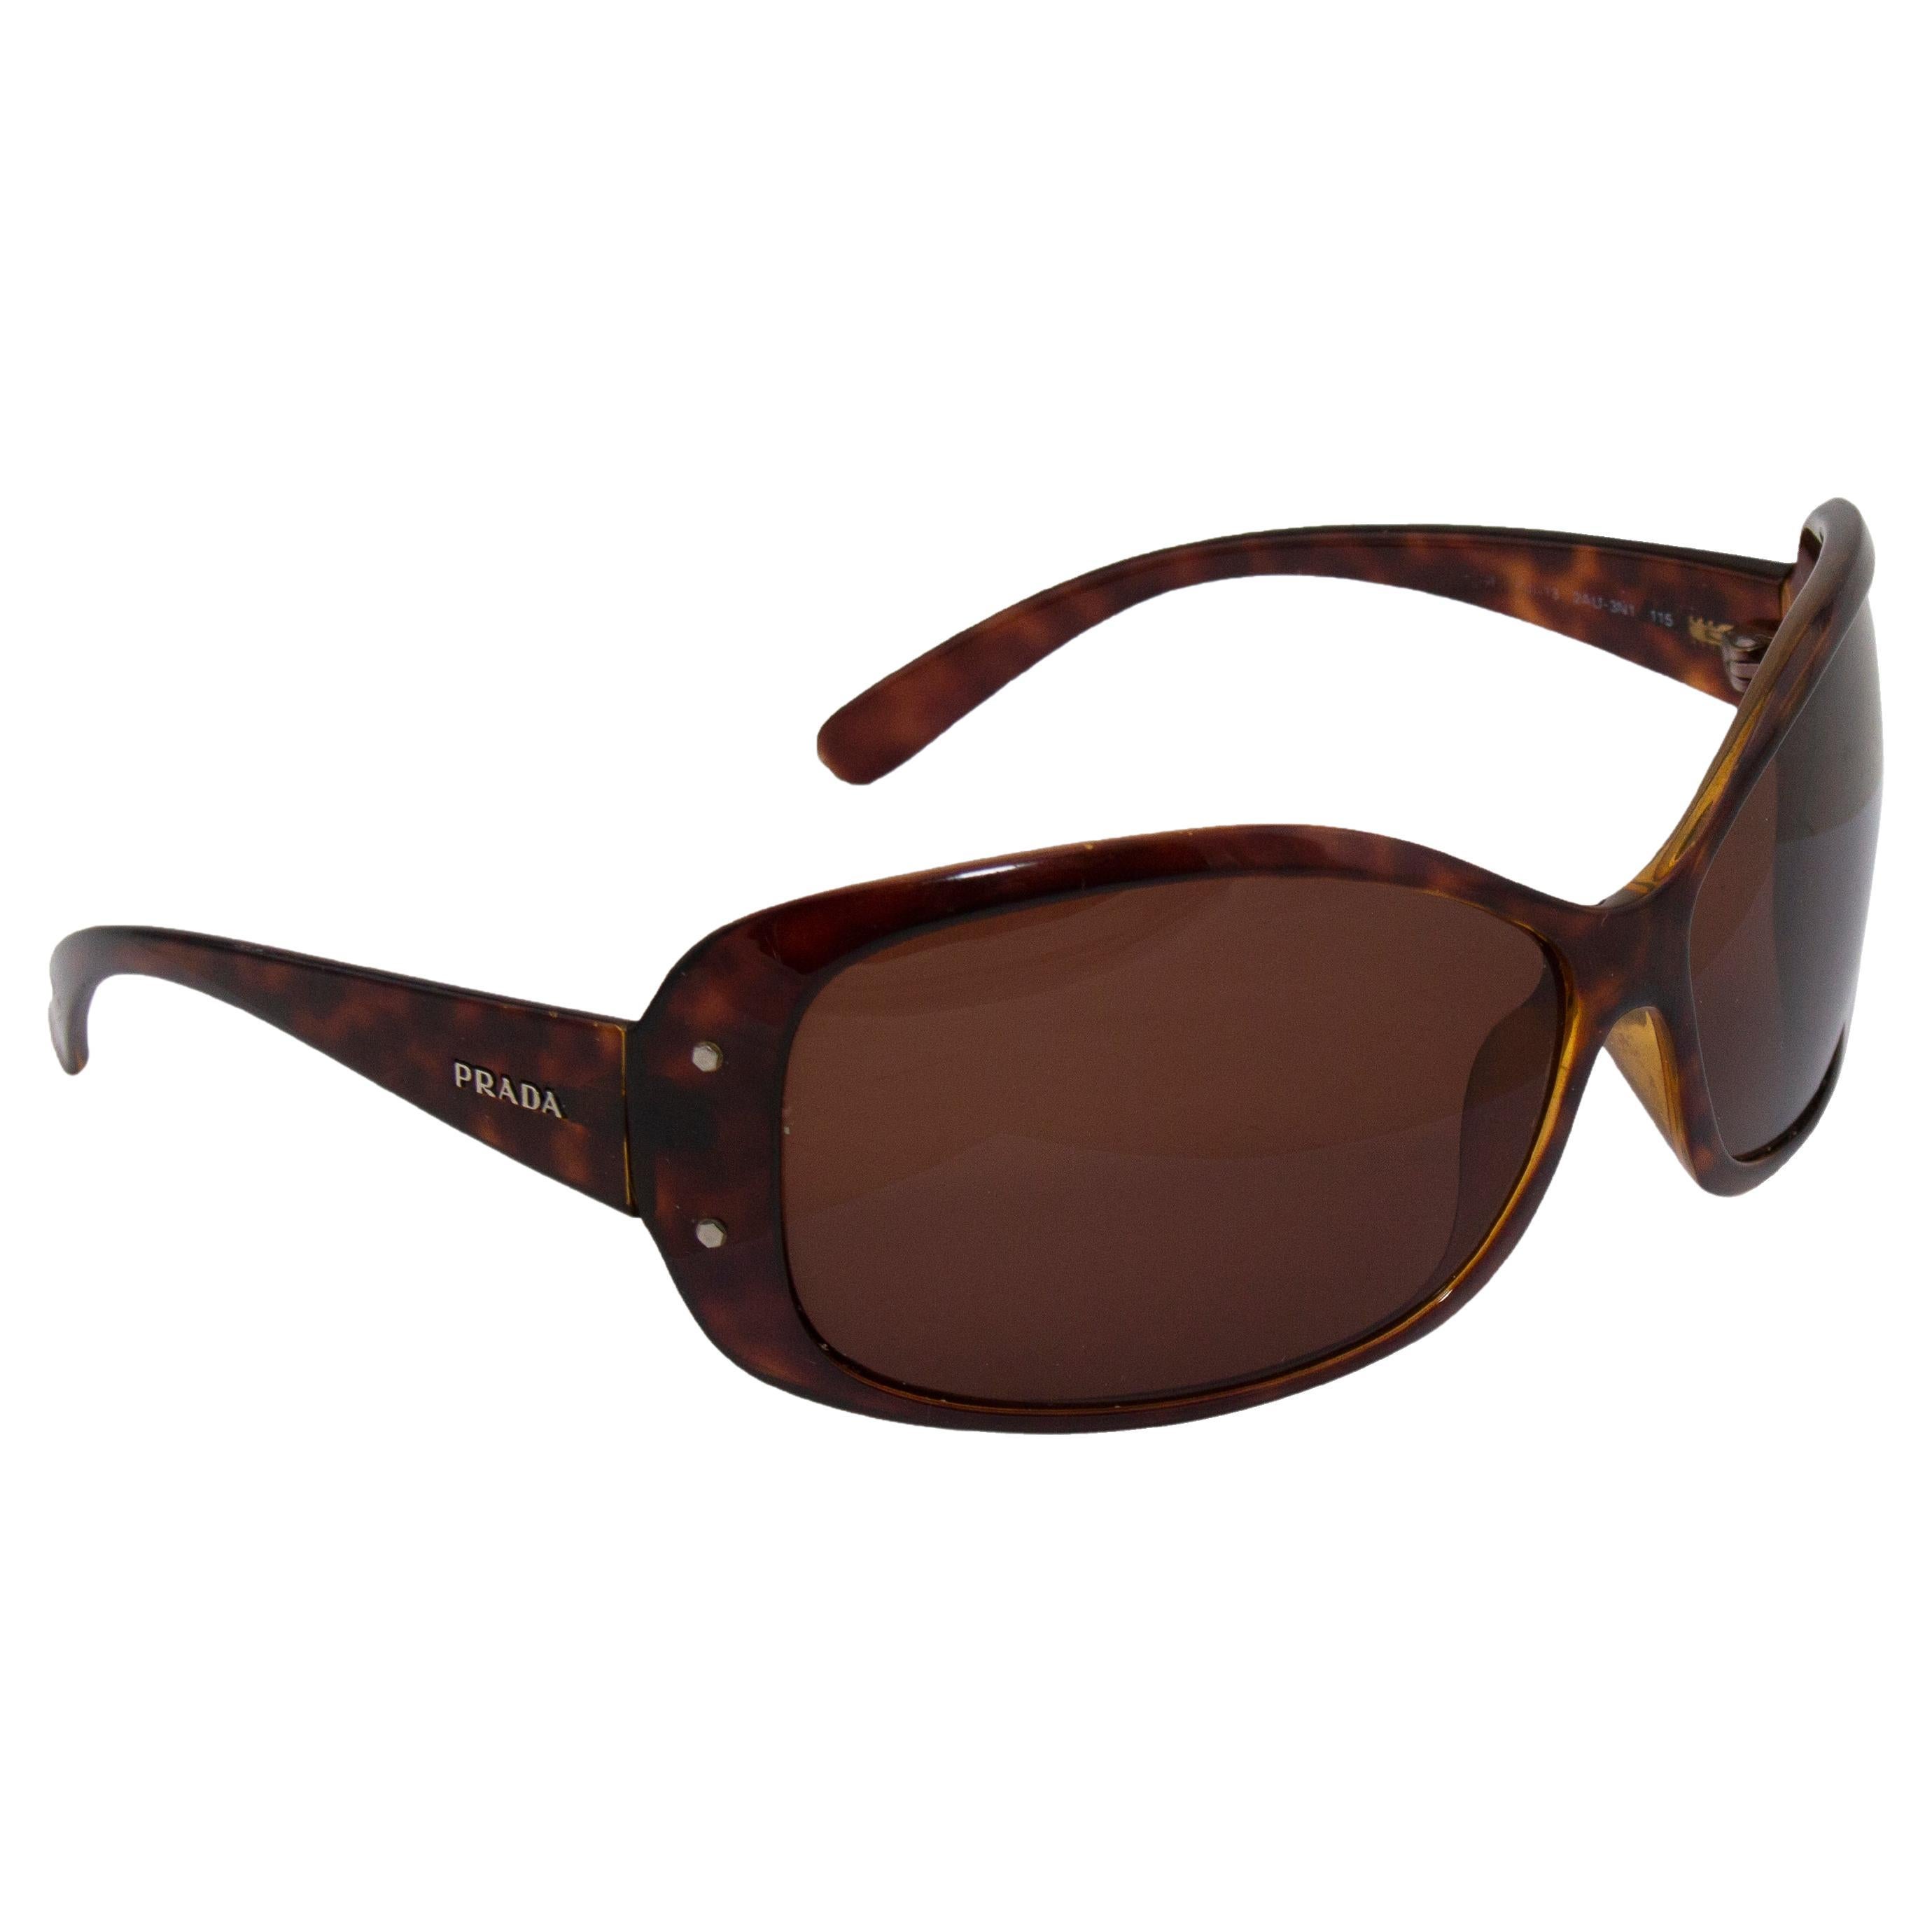 Prada Sunglasses Brown - 11 For Sale on 1stDibs